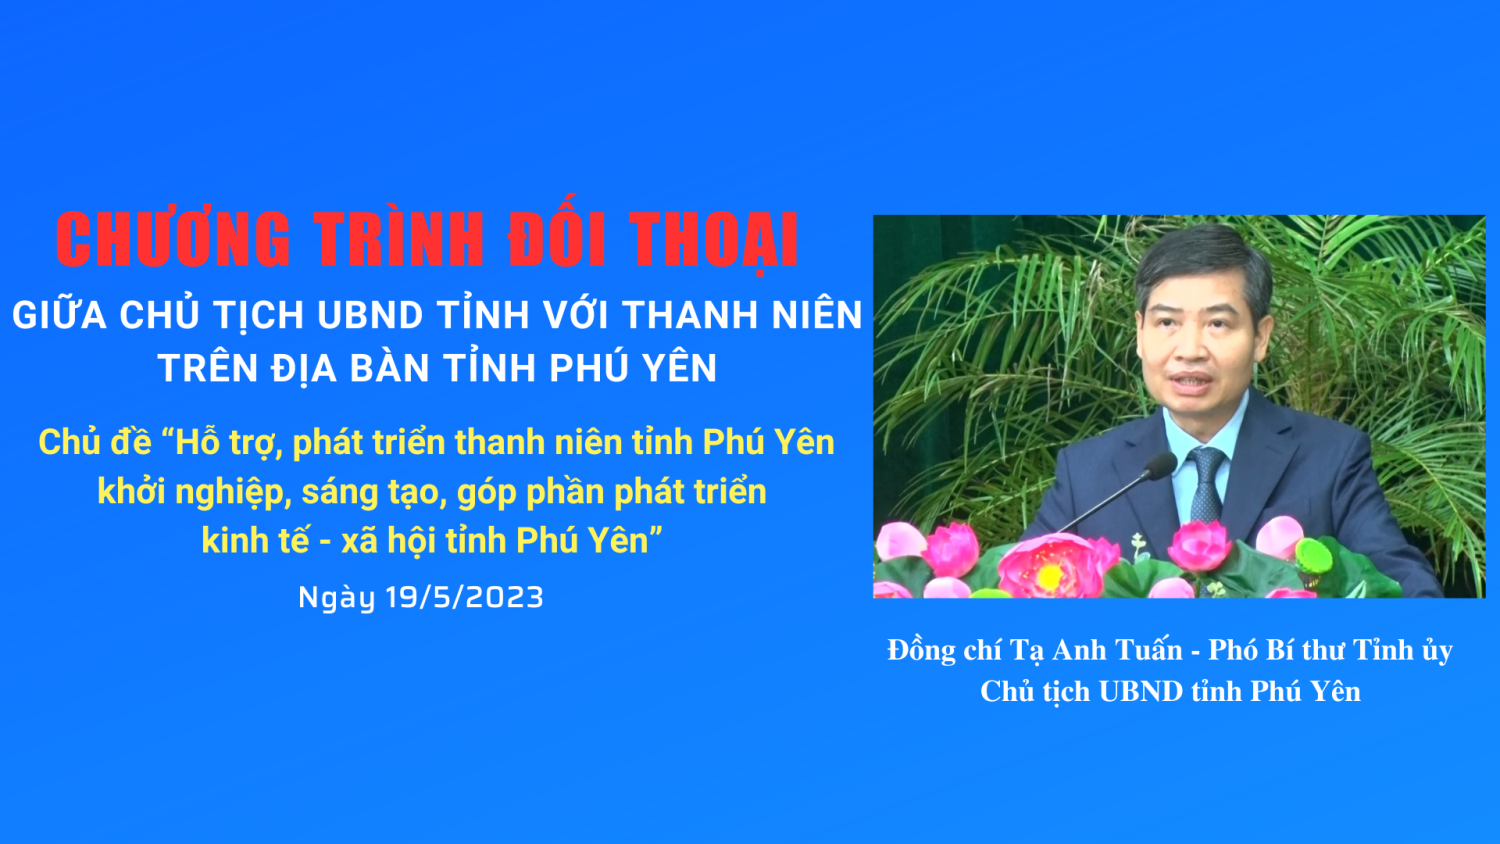 Chủ tịch UBND tỉnh sẽ đối thoại với thanh niên trên địa bàn tỉnh Phú Yên năm 2023